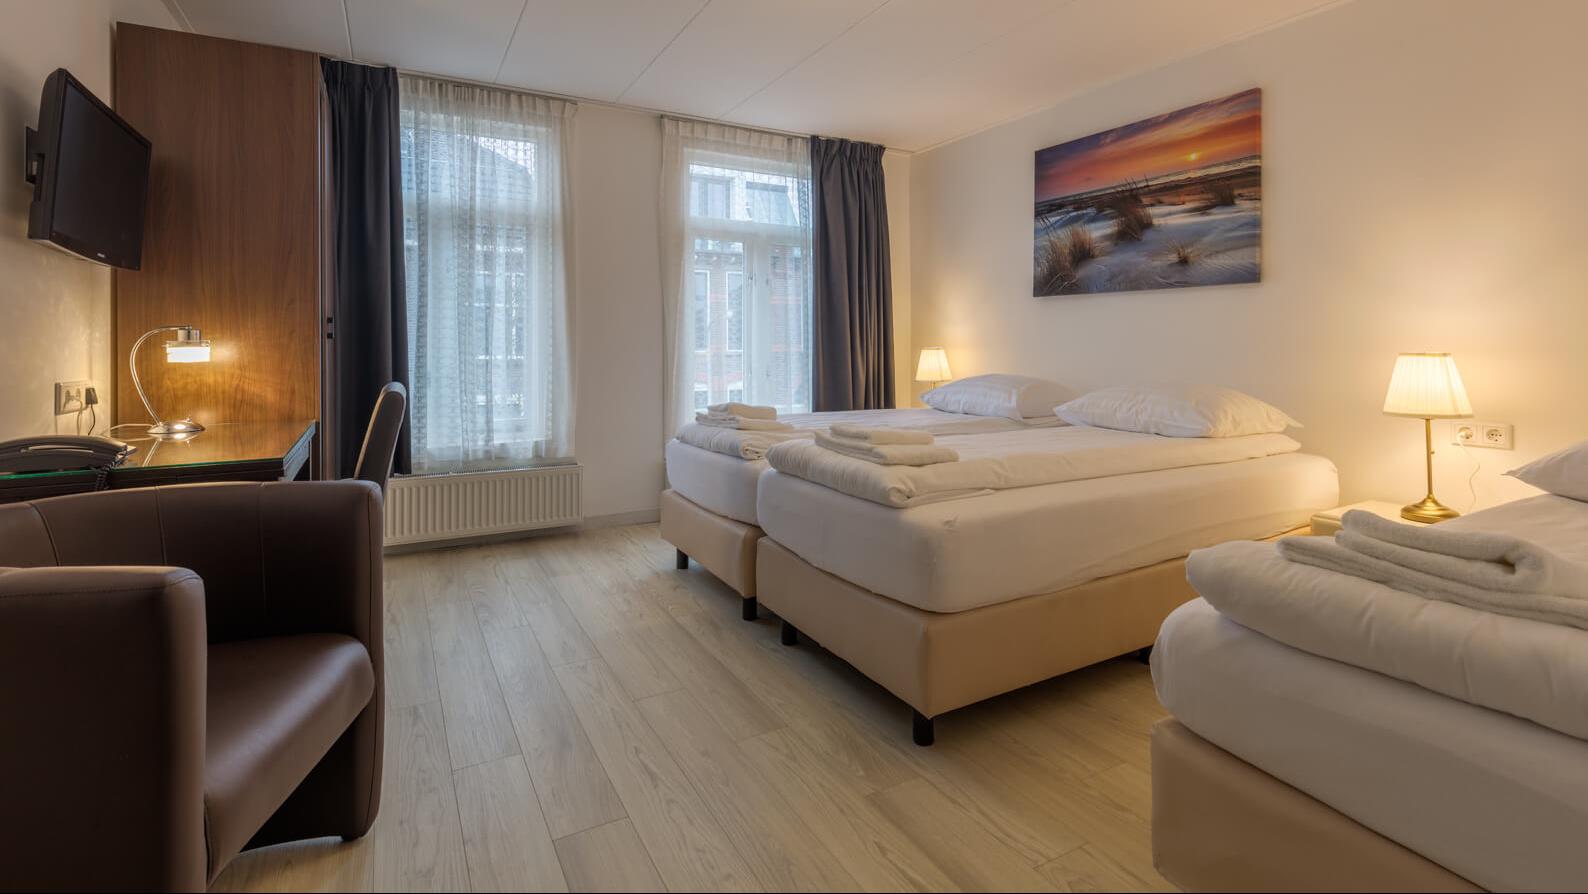 Triple room €105,-